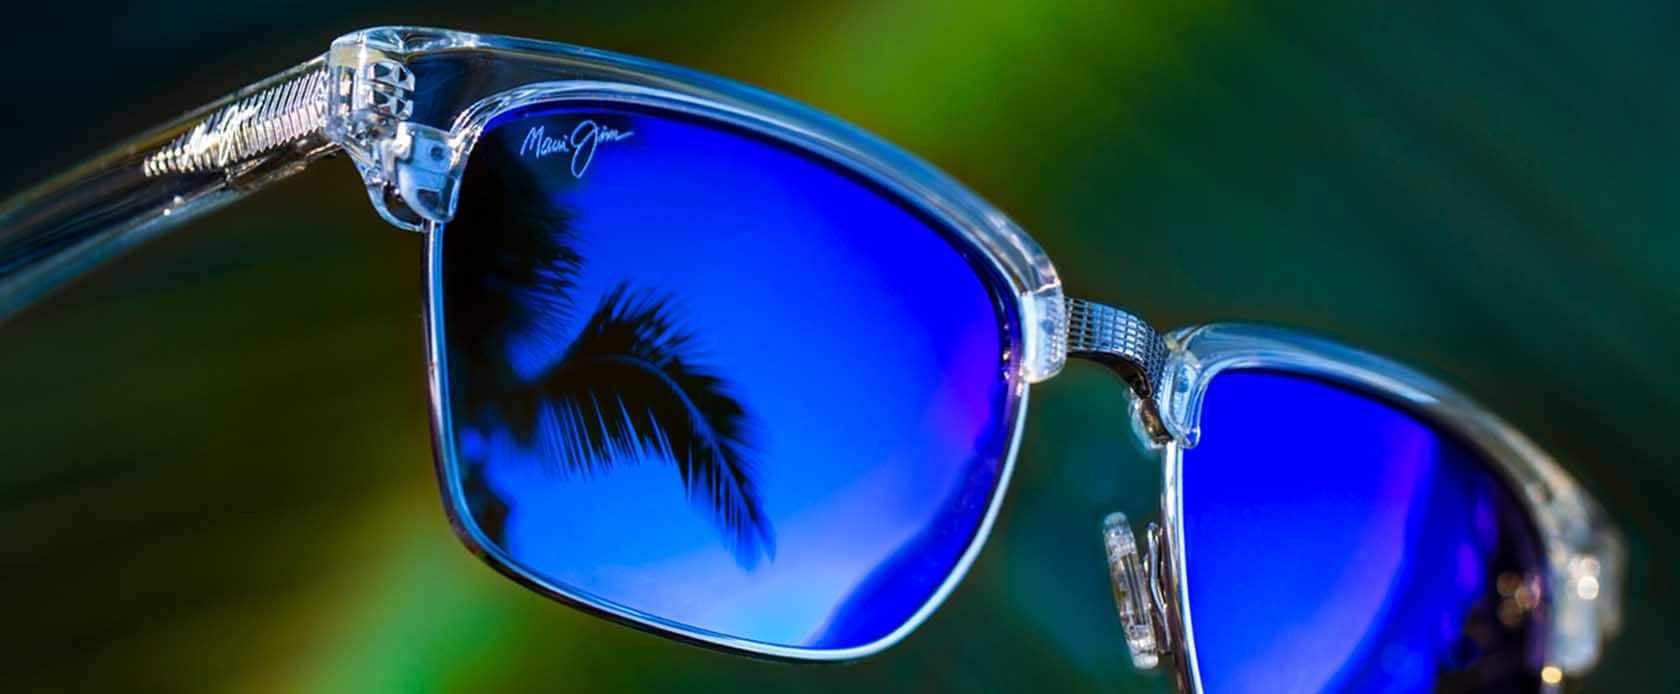 lunettes de soleil à monture transparente aux verres bleus avec reflet du ciel